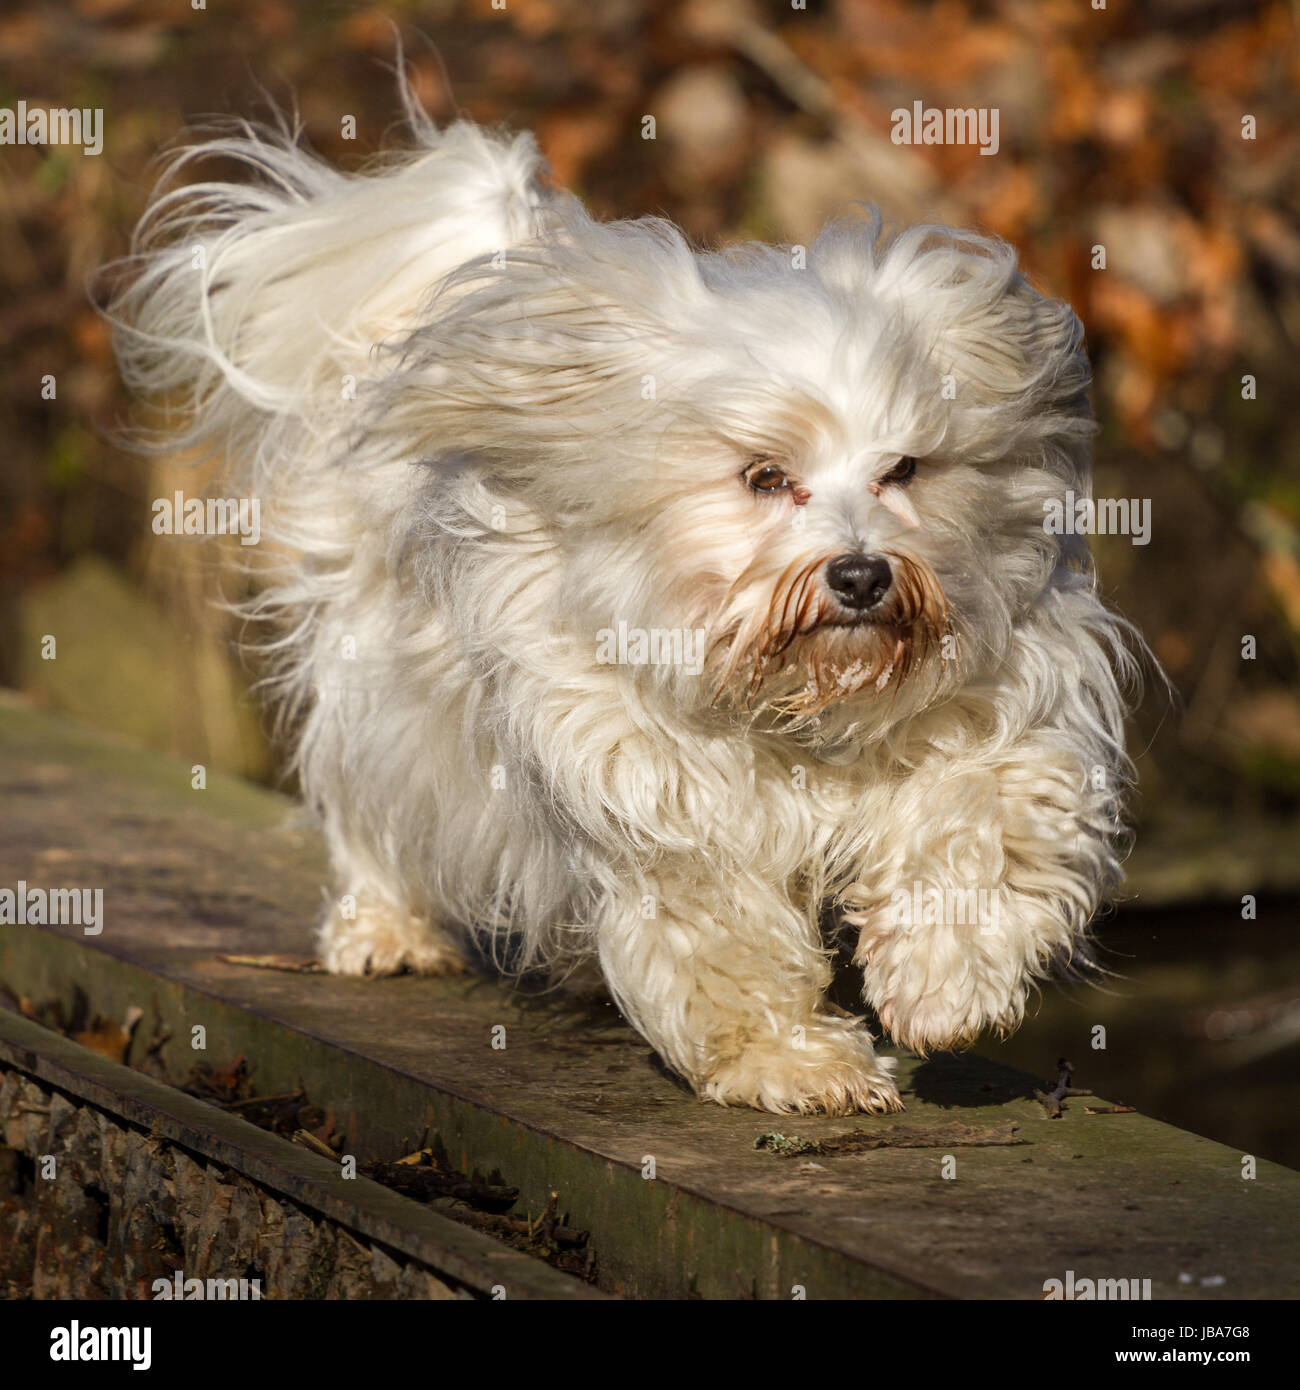 Ein Kleiner Langhaar Hund balanciert über einen Stahlträger in einer Herbstlichen Umgebung. Stock Photo